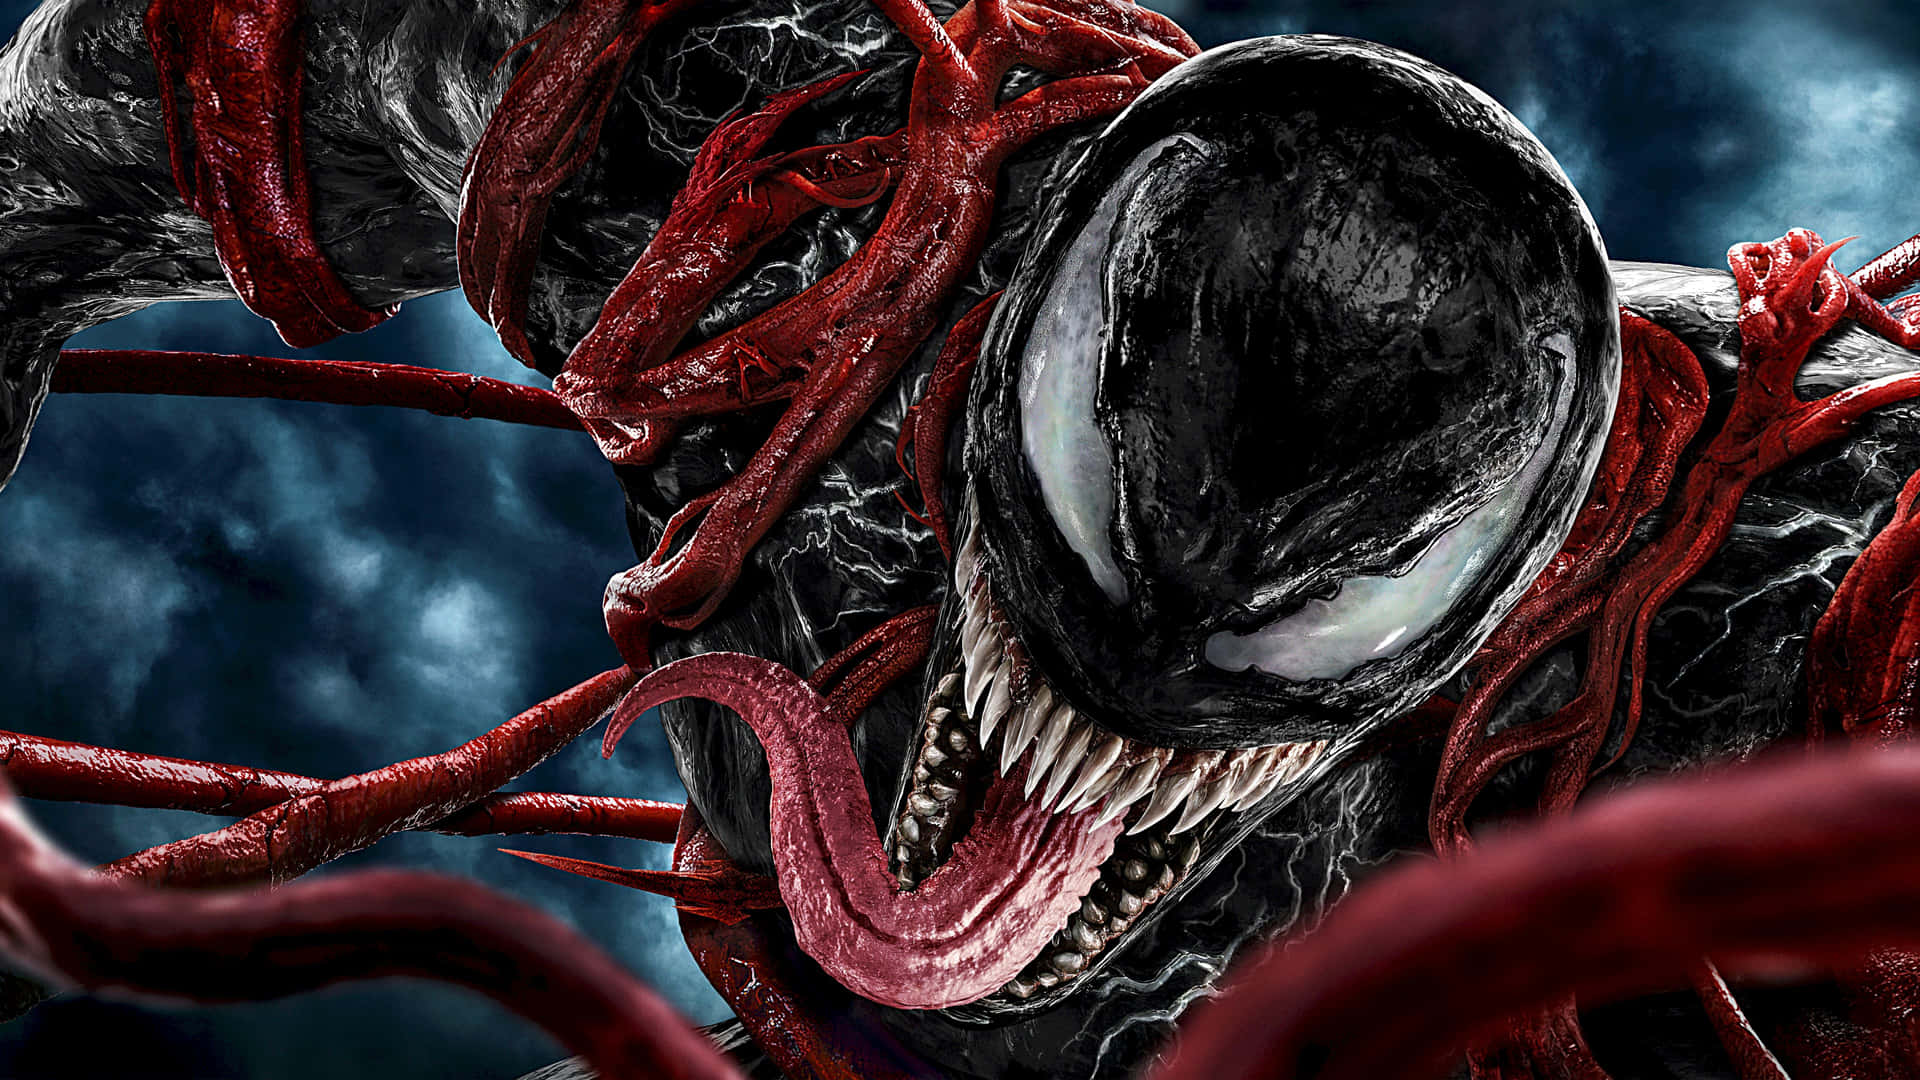 Währendgut Und Böse Krieg Führen, Liefern Sich Cool Venom Und Carnage Einen Kopf-an-kopf-kampf. Wallpaper